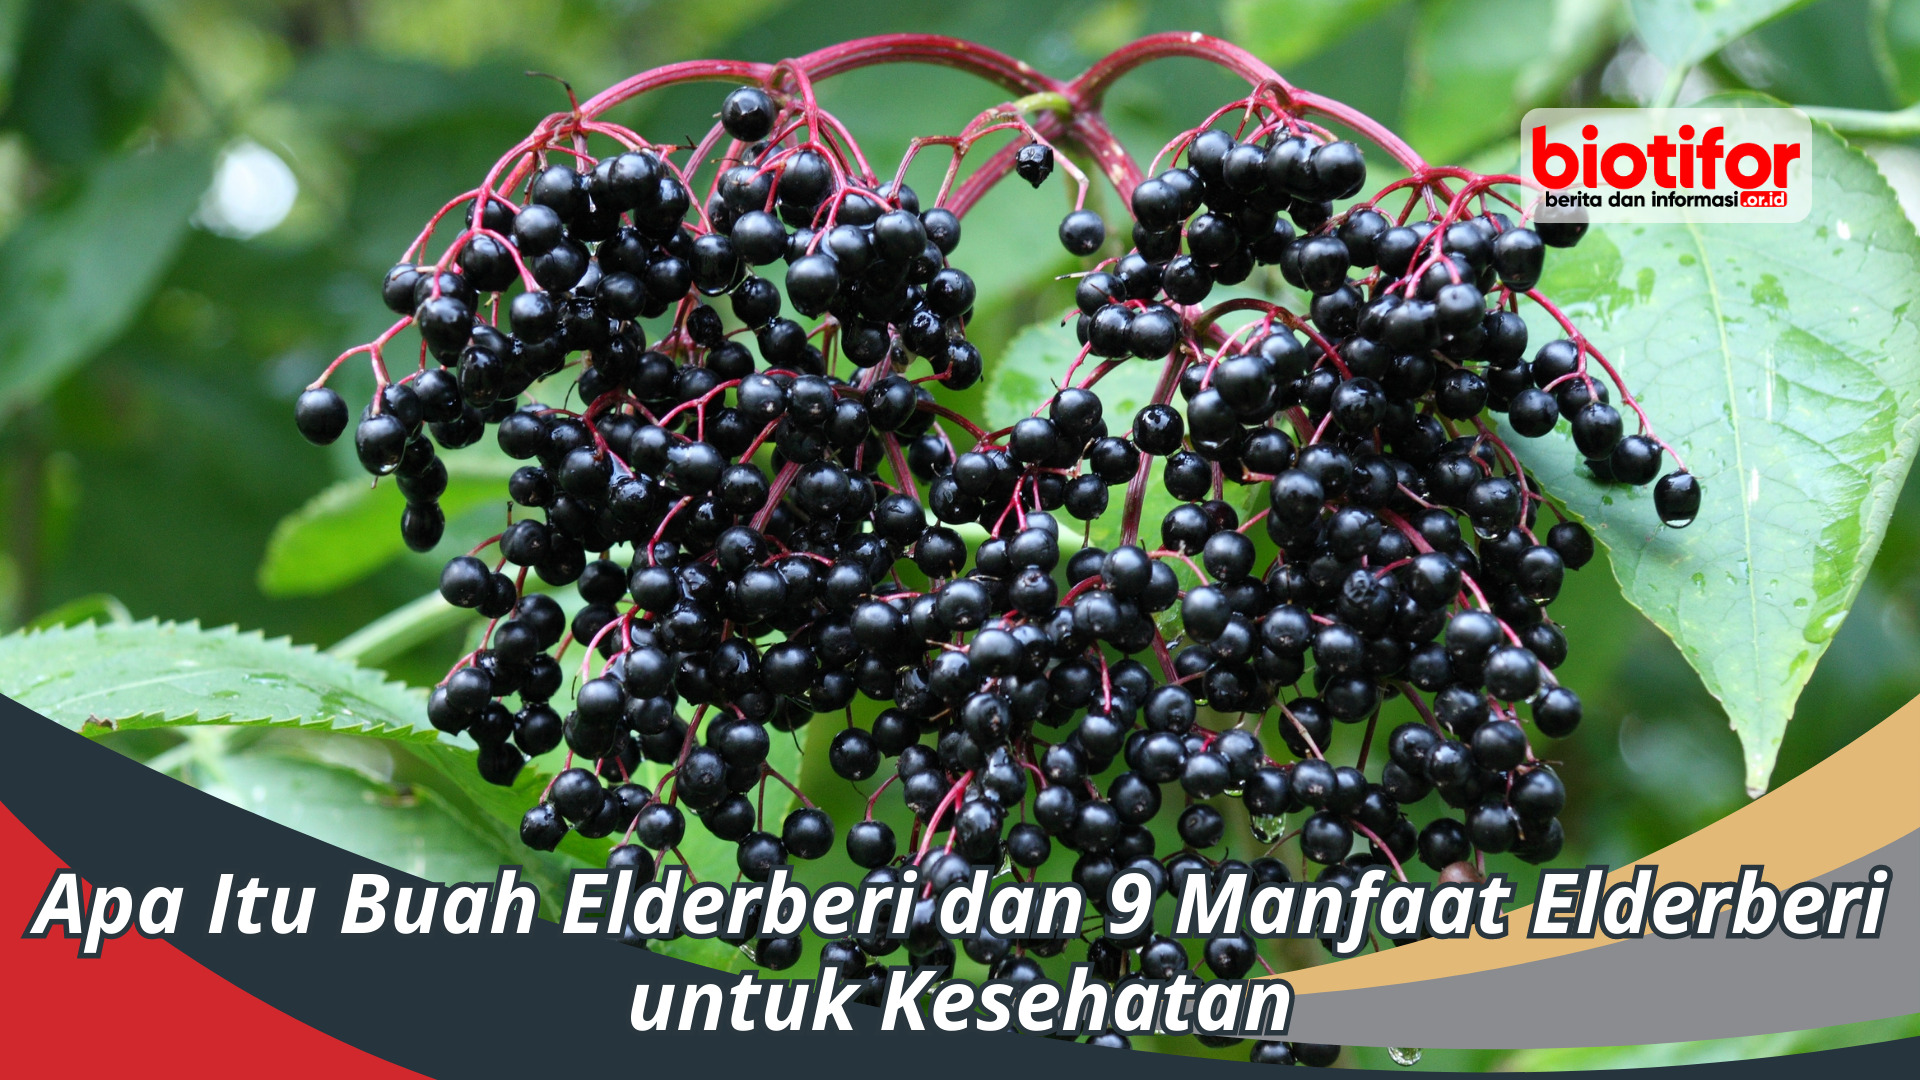 manfaat elderberry